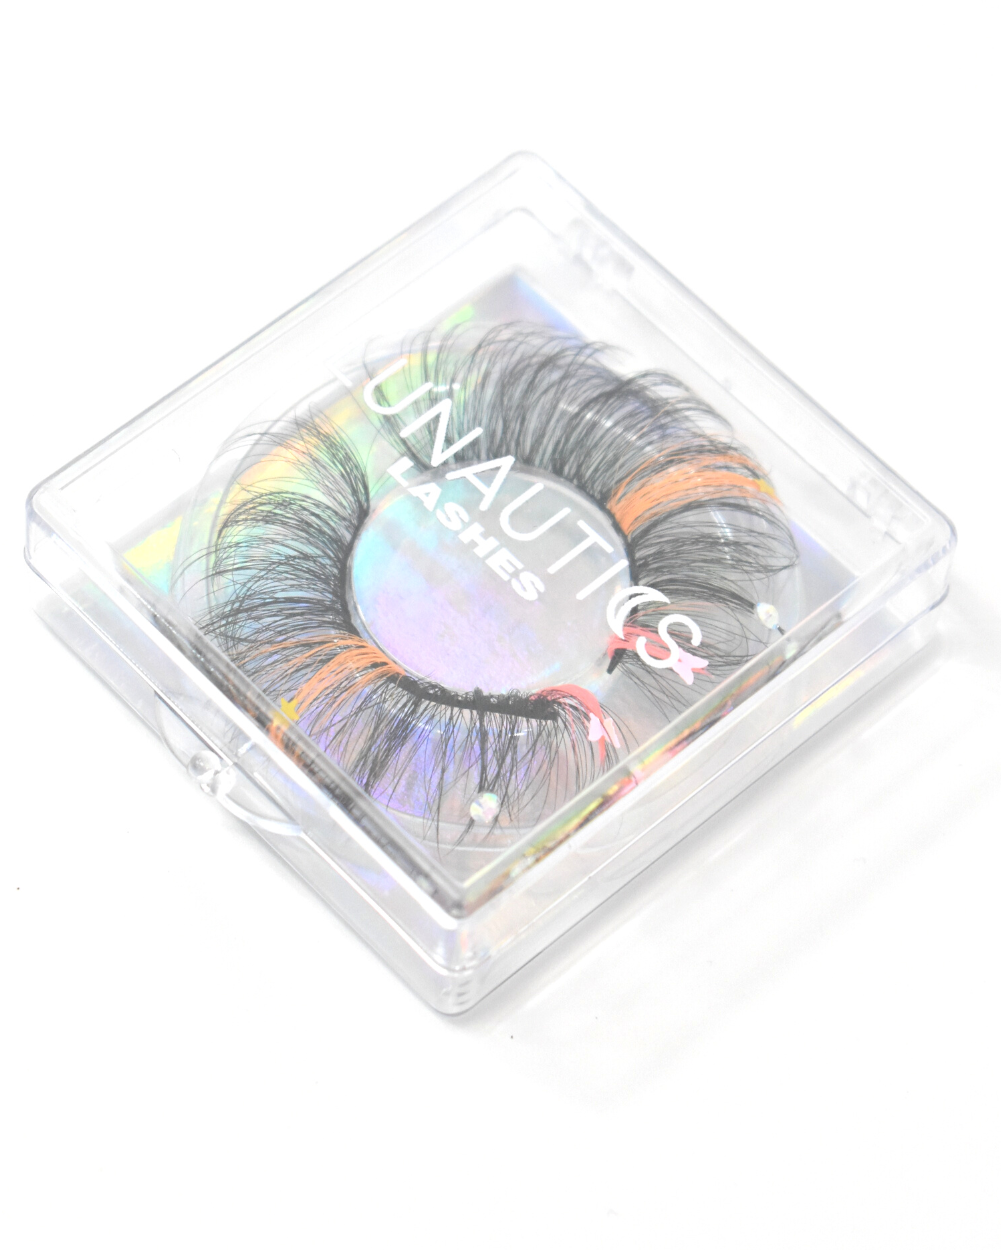 Sorbet Sparkle- Faux Mink Glam Glitter &amp; Rhinestone Eyelashes - Lunautics False Eyelashes